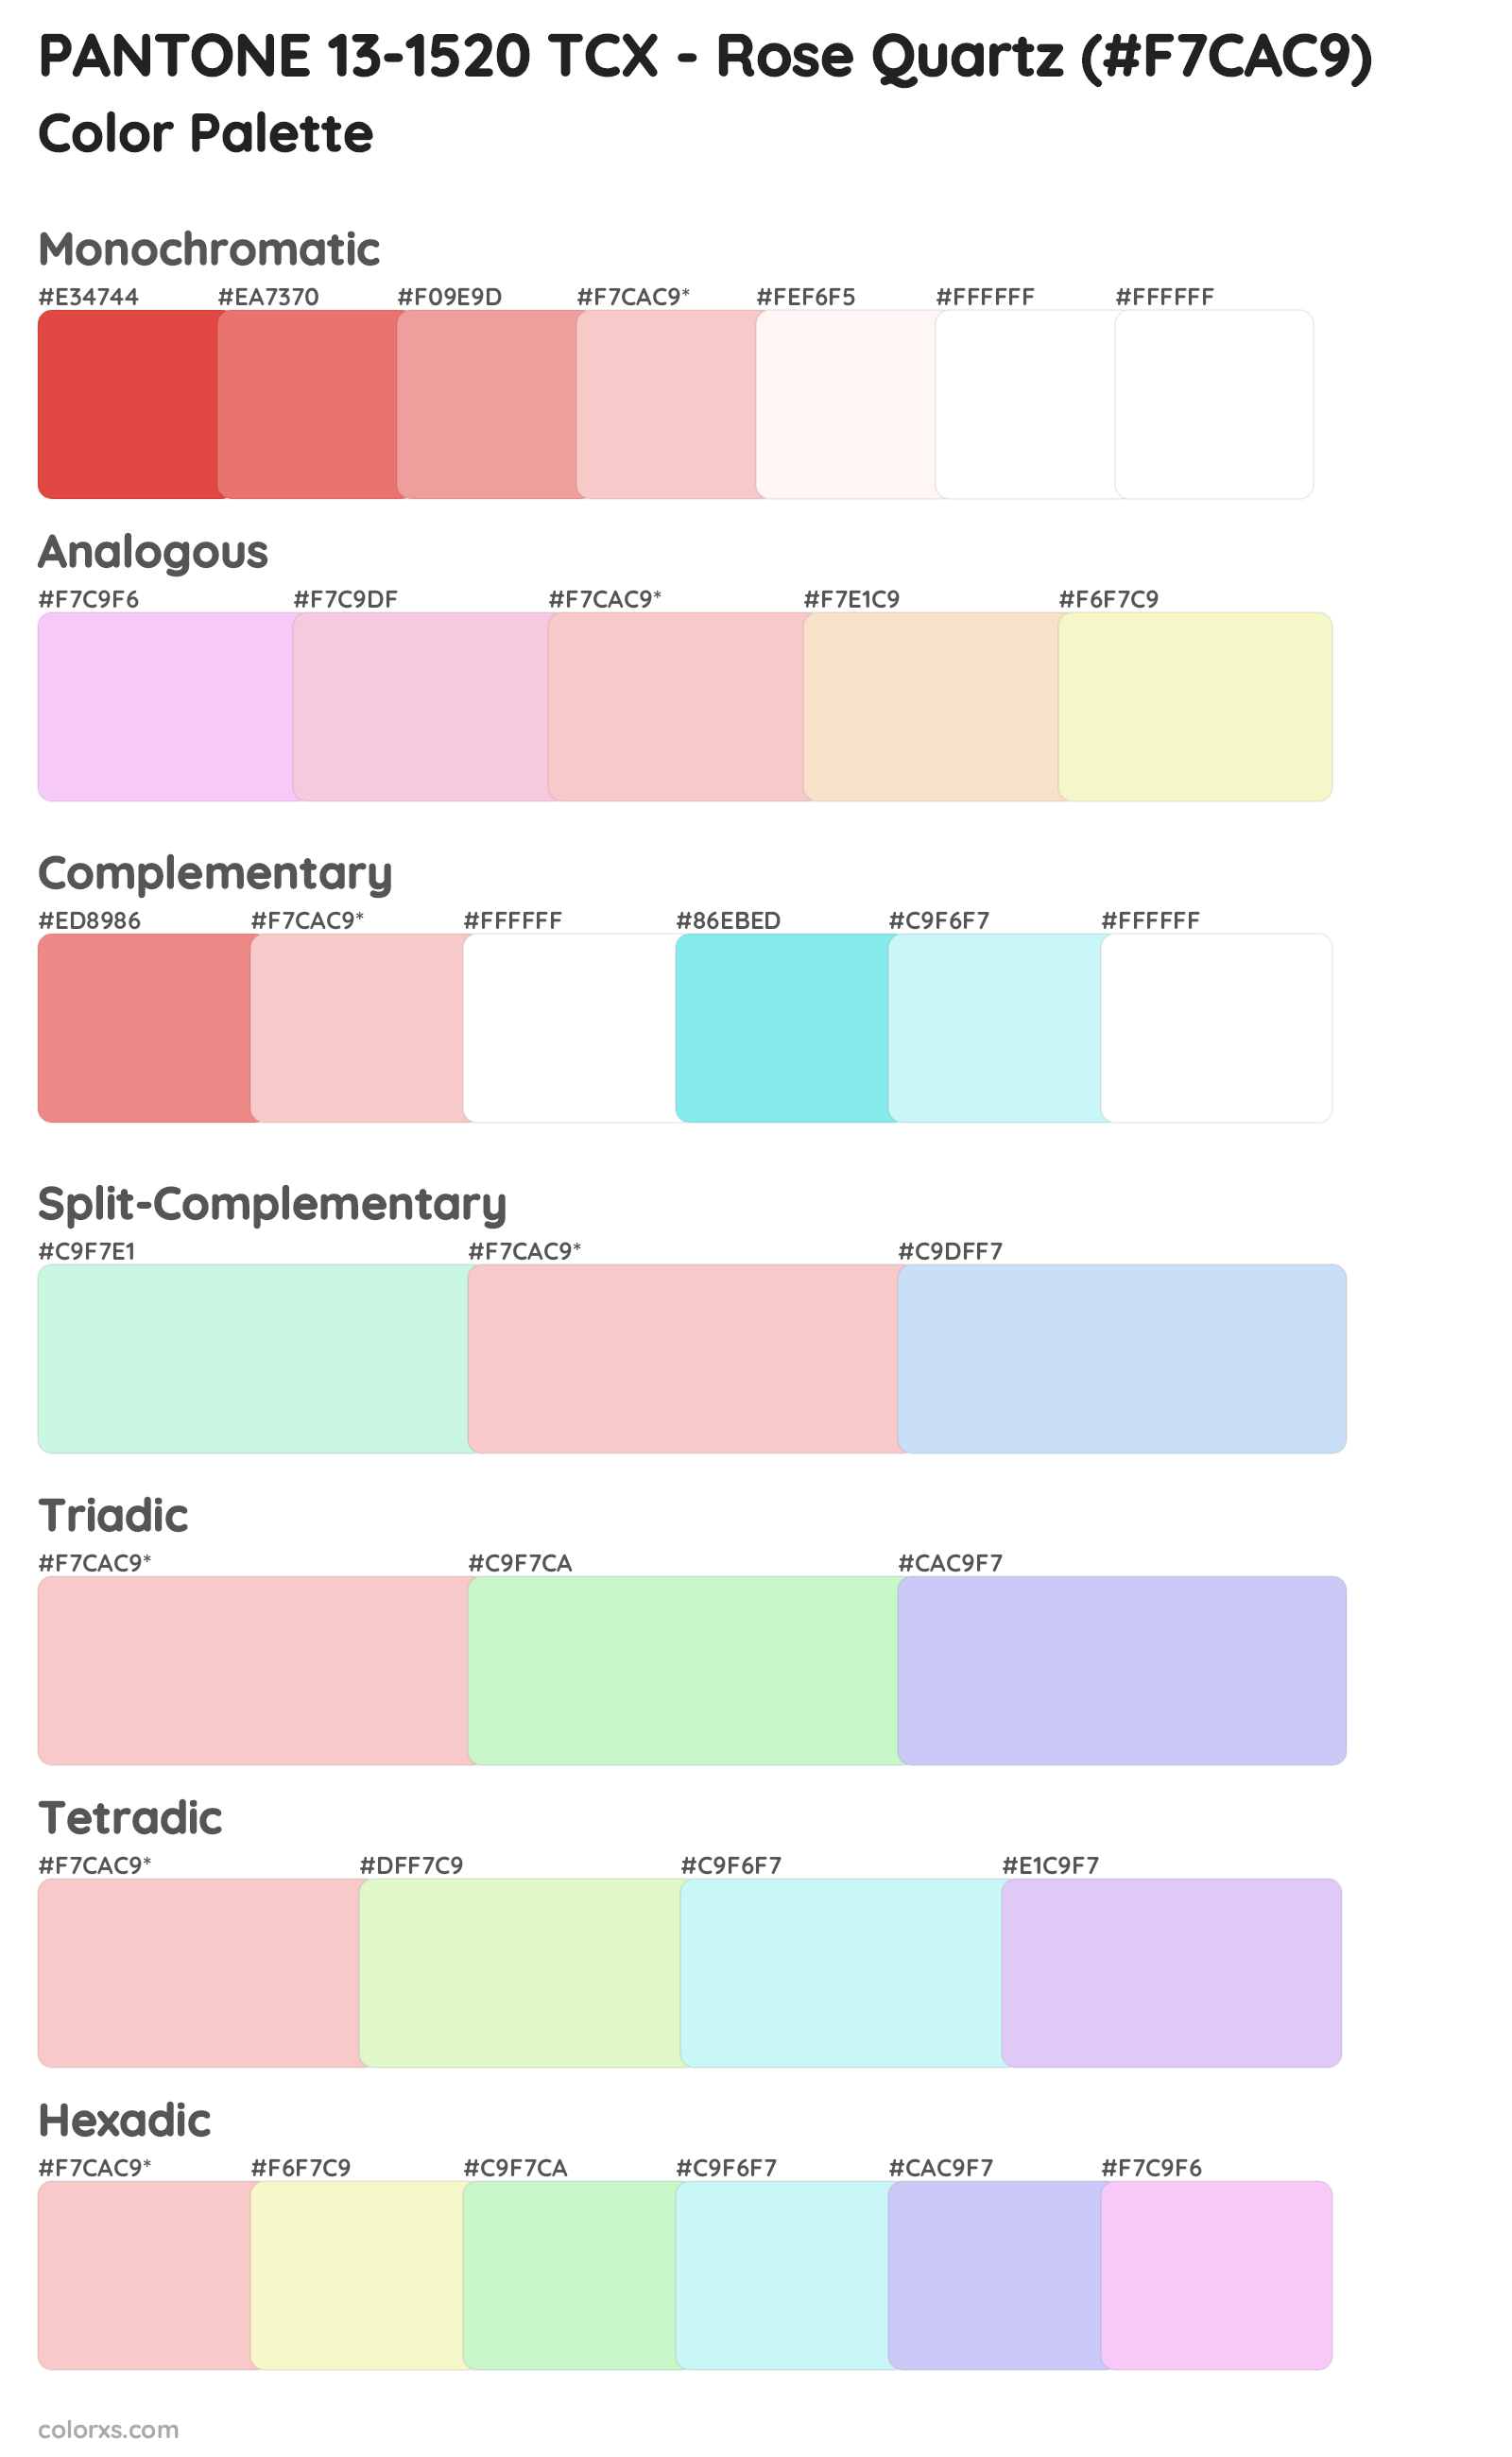 PANTONE 13-1520 TCX - Rose Quartz Color Scheme Palettes